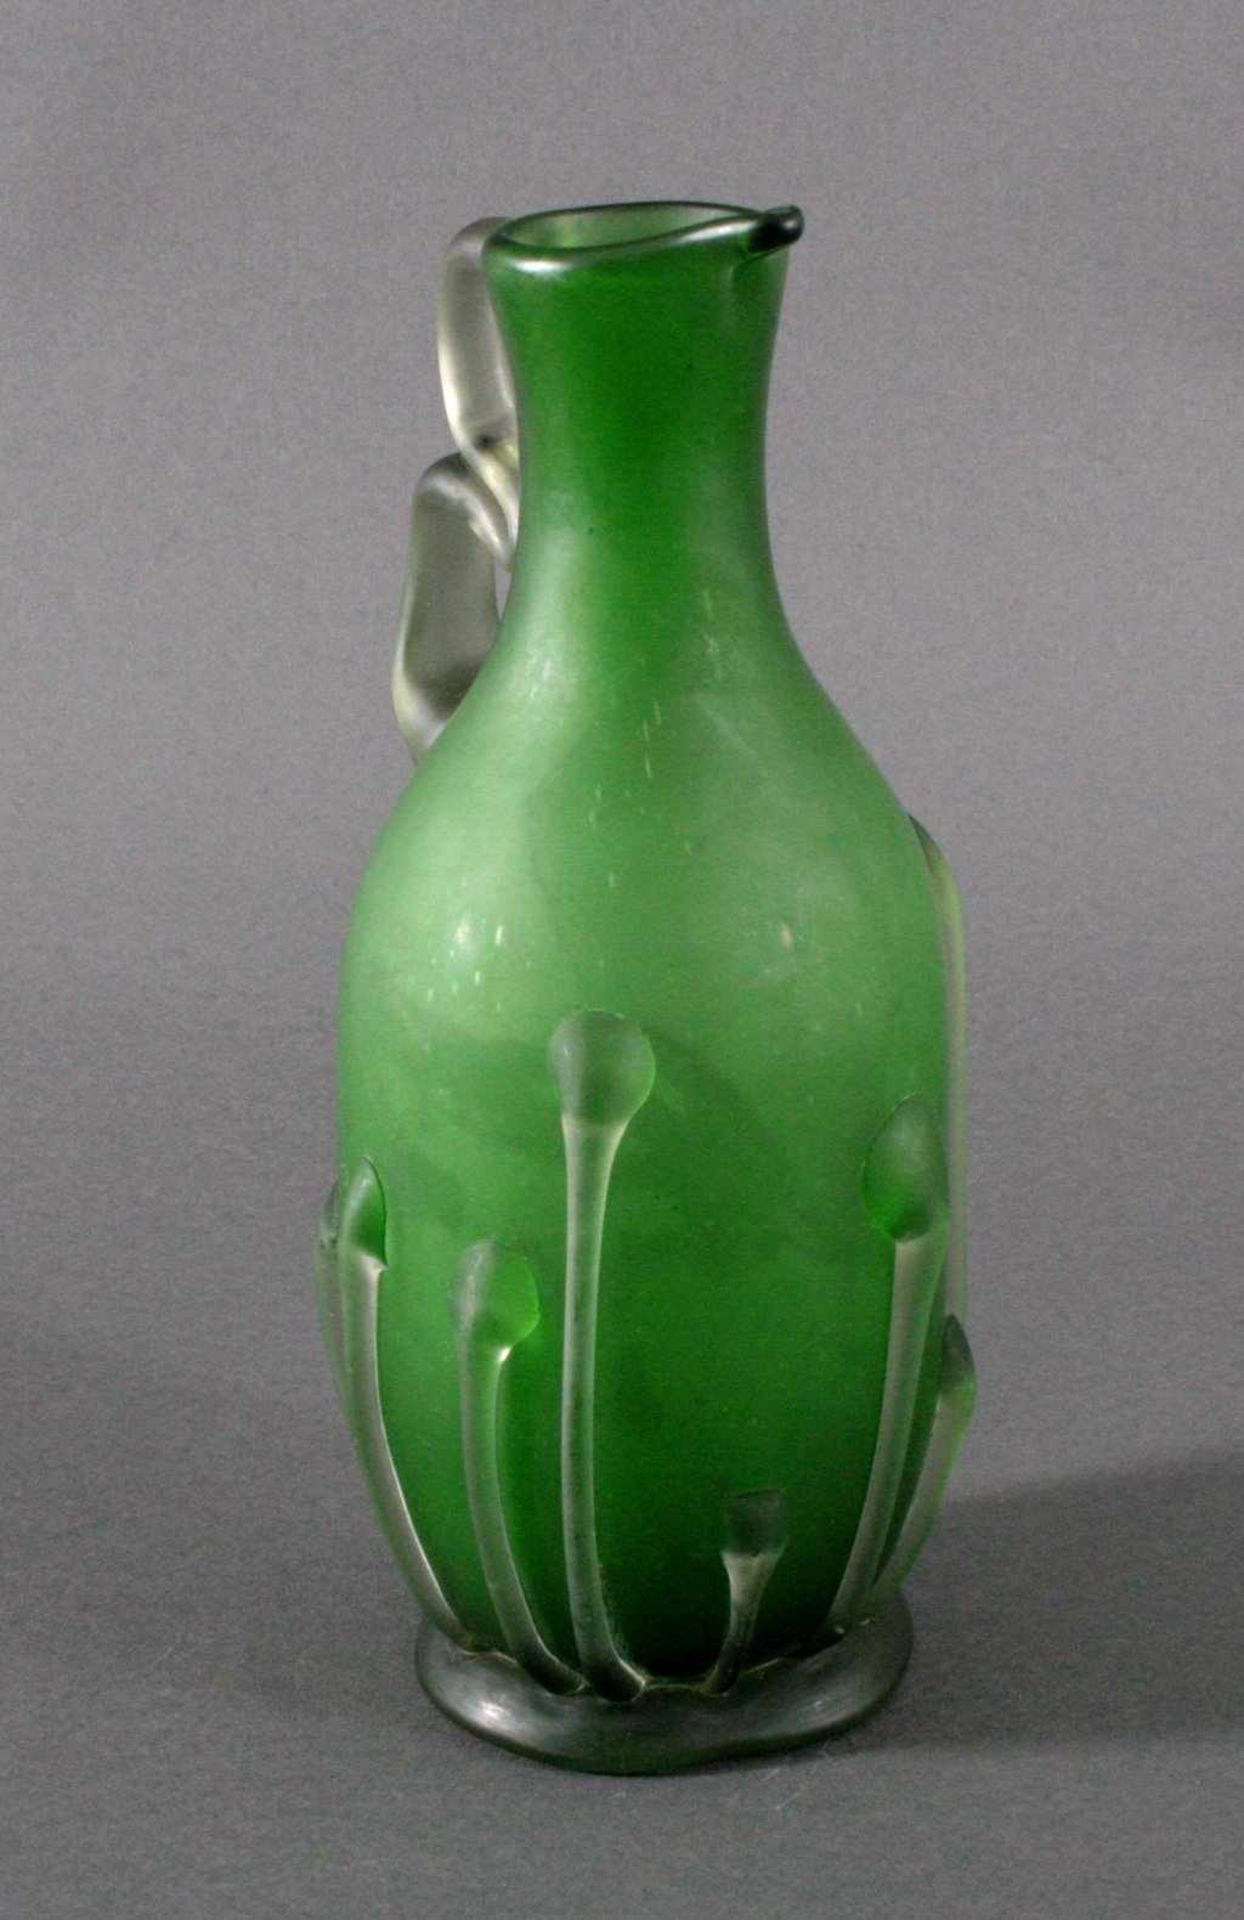 GlaskaraffeFarbloses dickwandiges mattiertes Glas, mit grünem Innenfangund aufgesetzte henkel und - Bild 2 aus 3